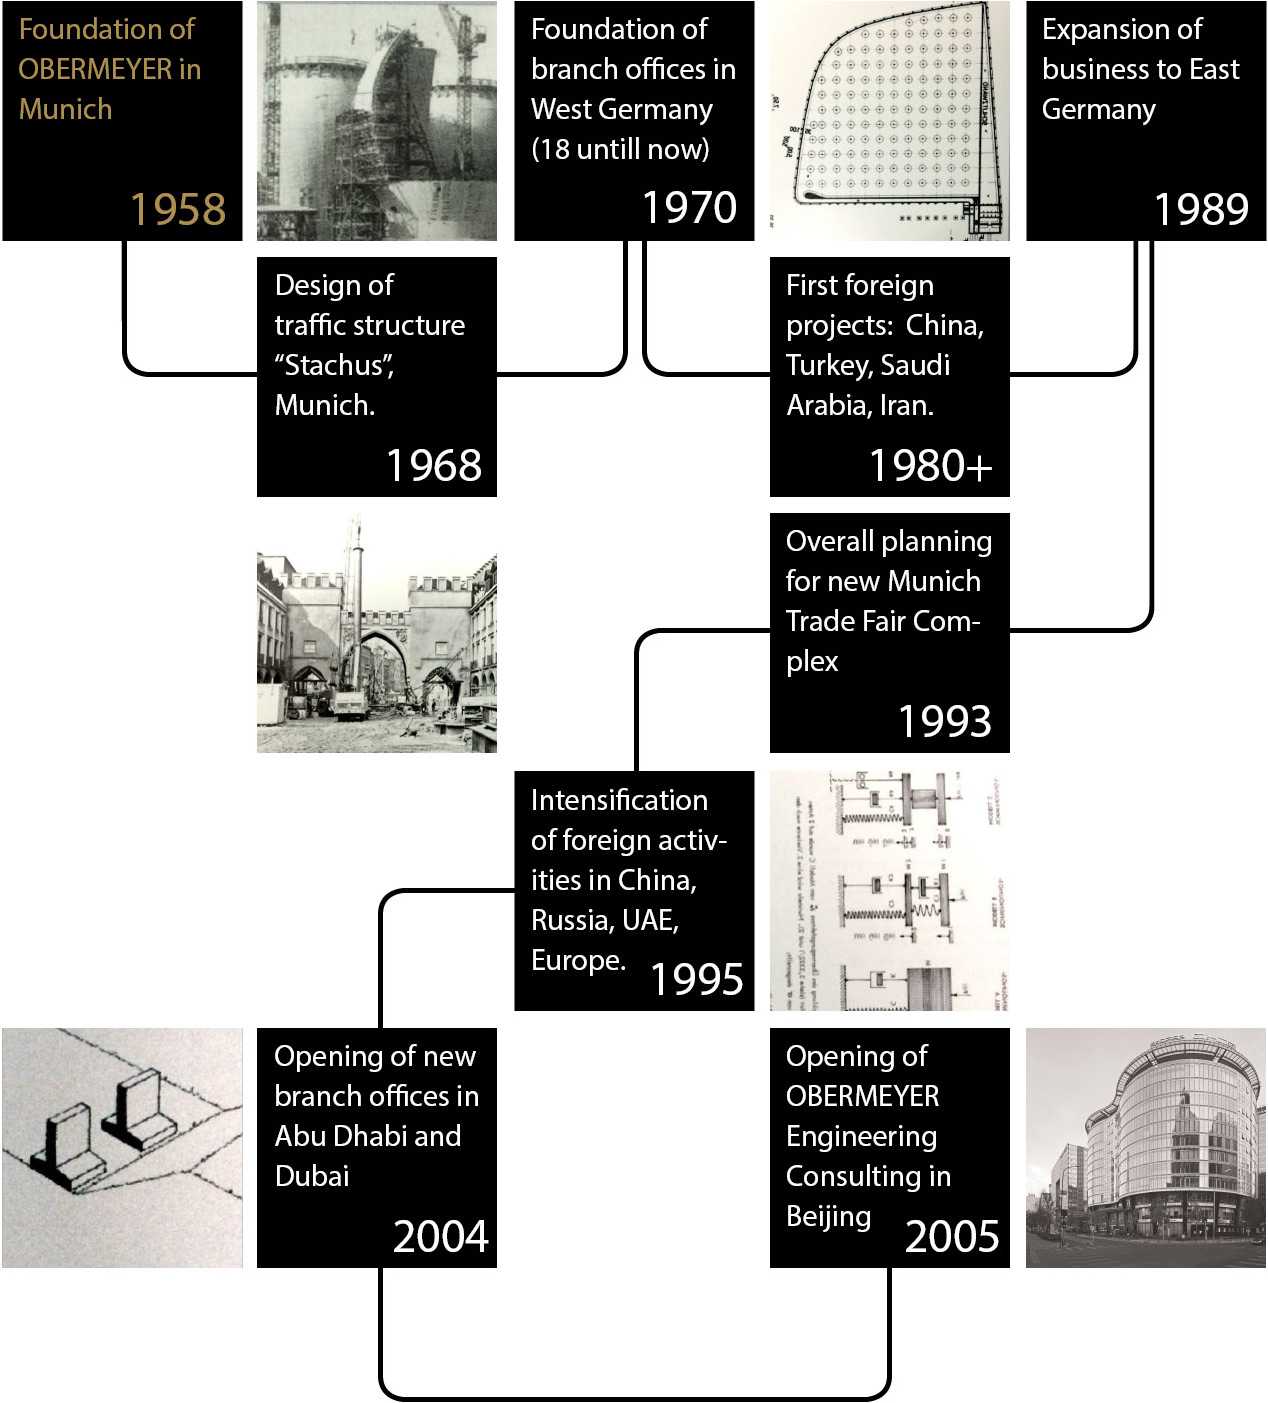 OBERMEYER Company History